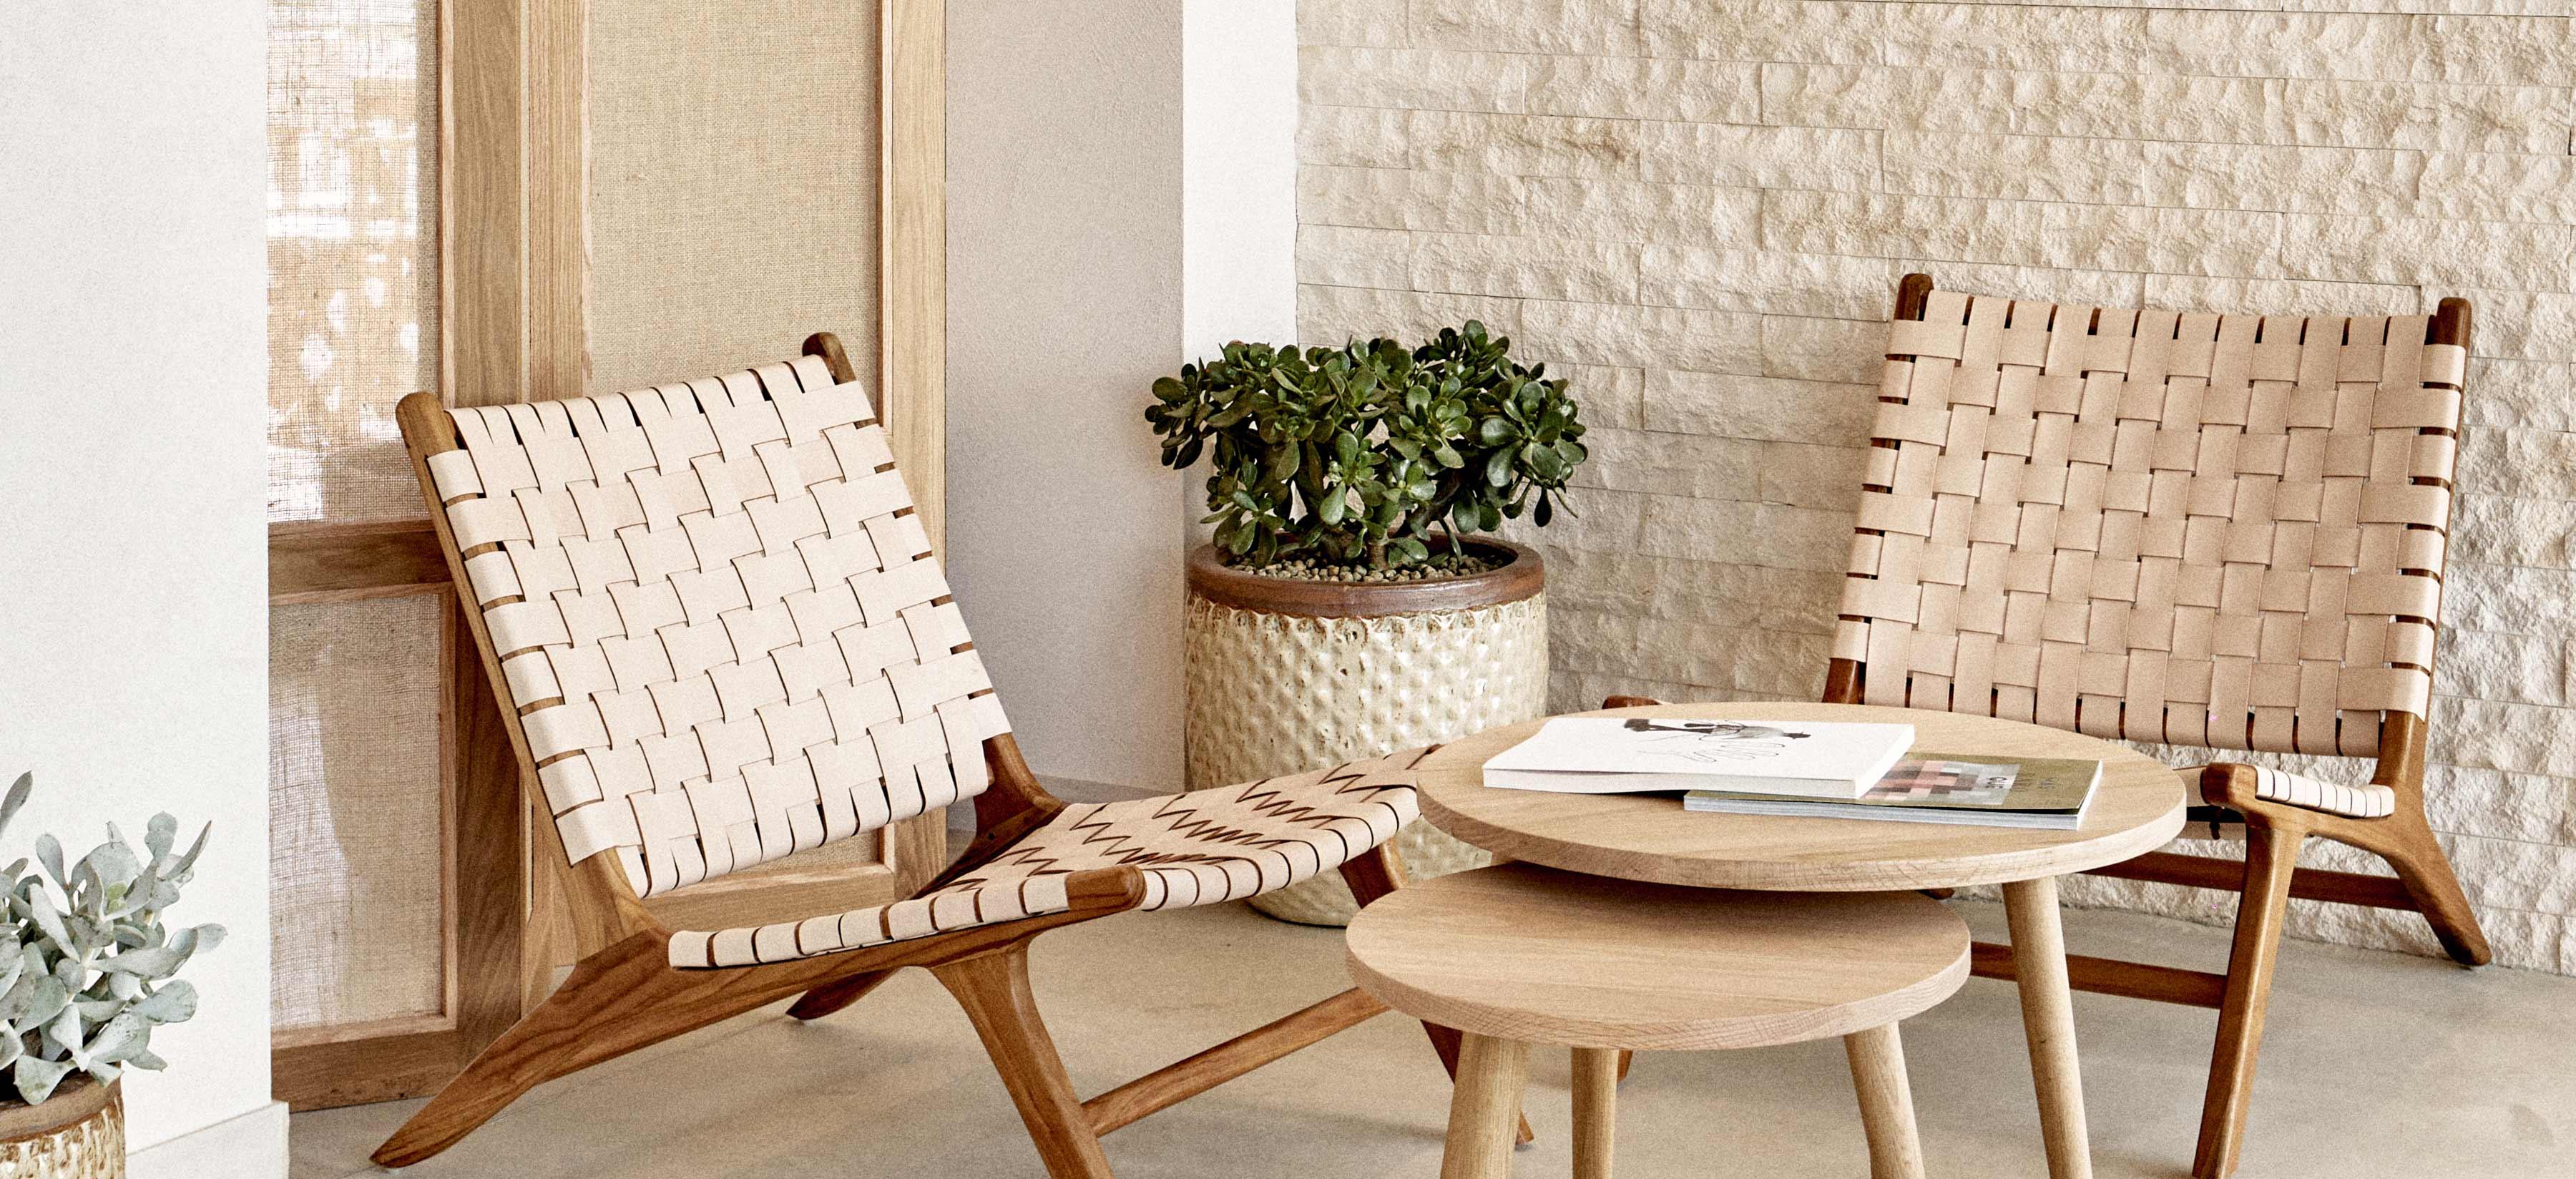 un cálido rincón lounge, dos sillones relajantes y una pequeña mesa con revistas